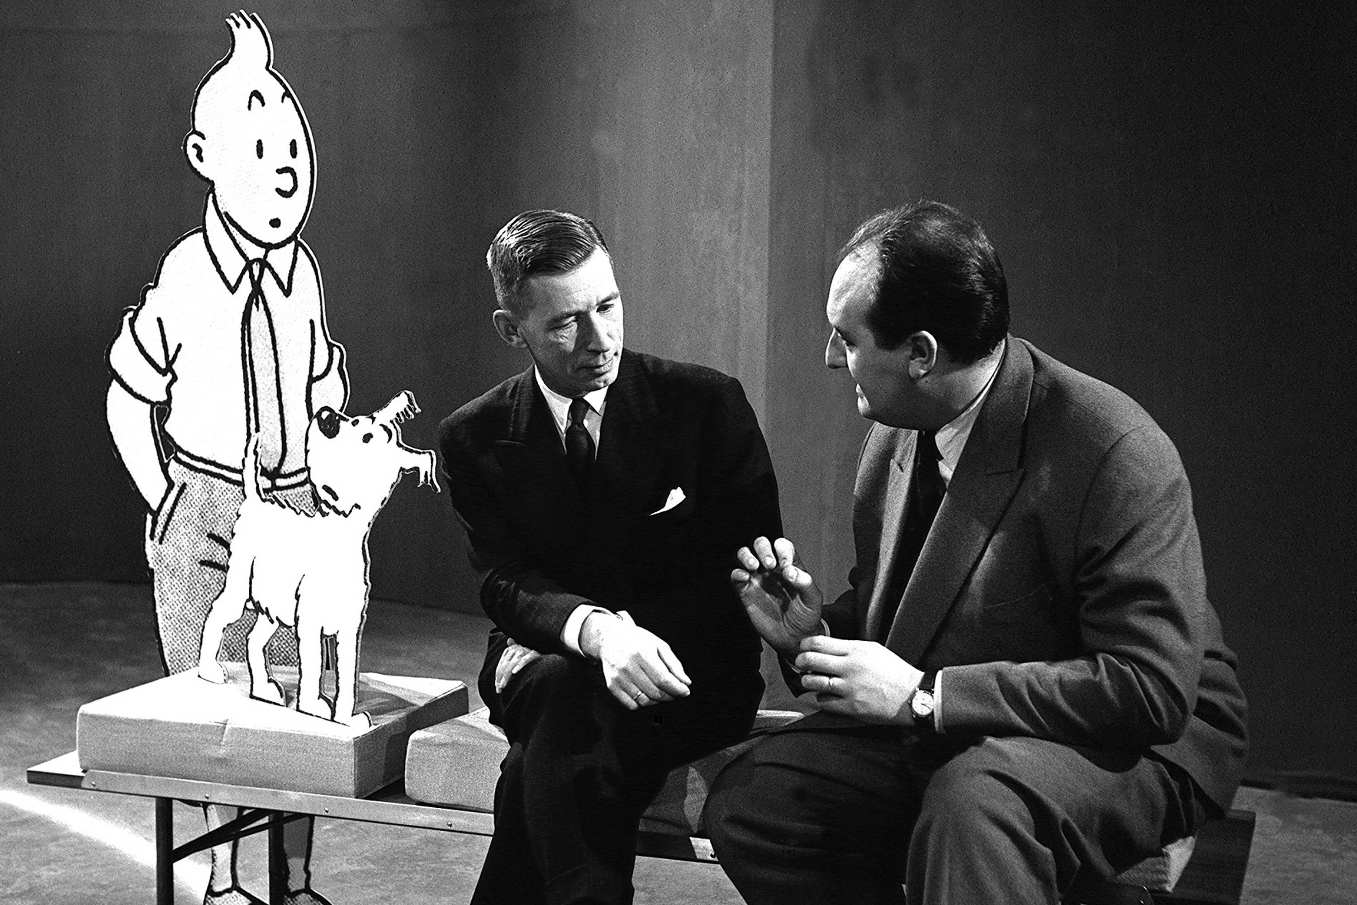 Interview du dessinateur Hergé par Pierre Tchernia dans l'émission "Parade du mois".